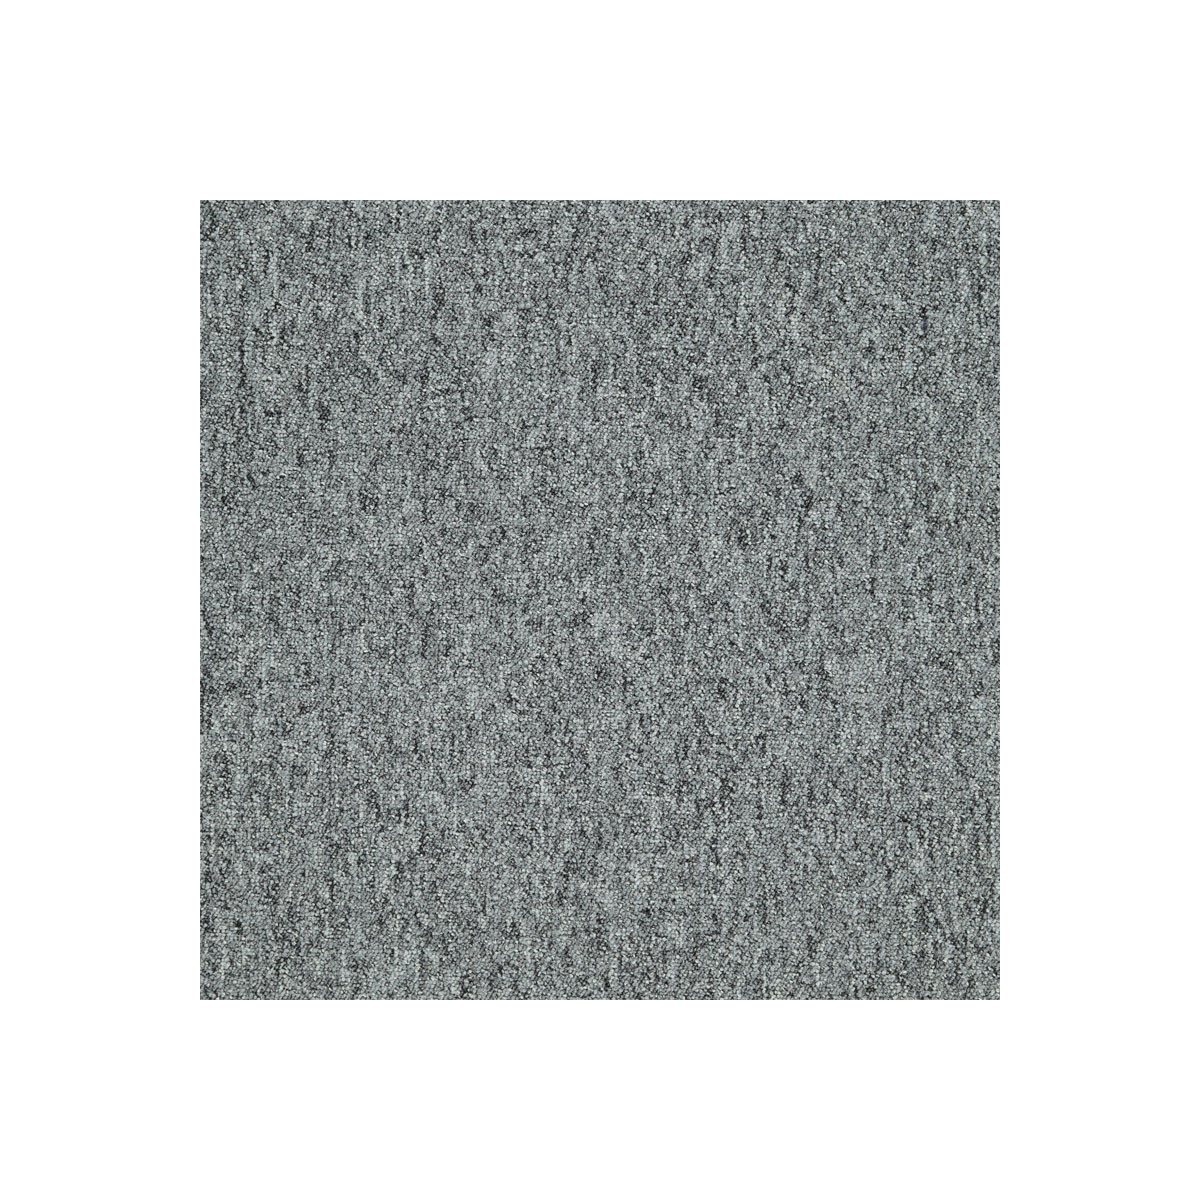 Kobercový čtverec Sonar 4476 tmavě šedý